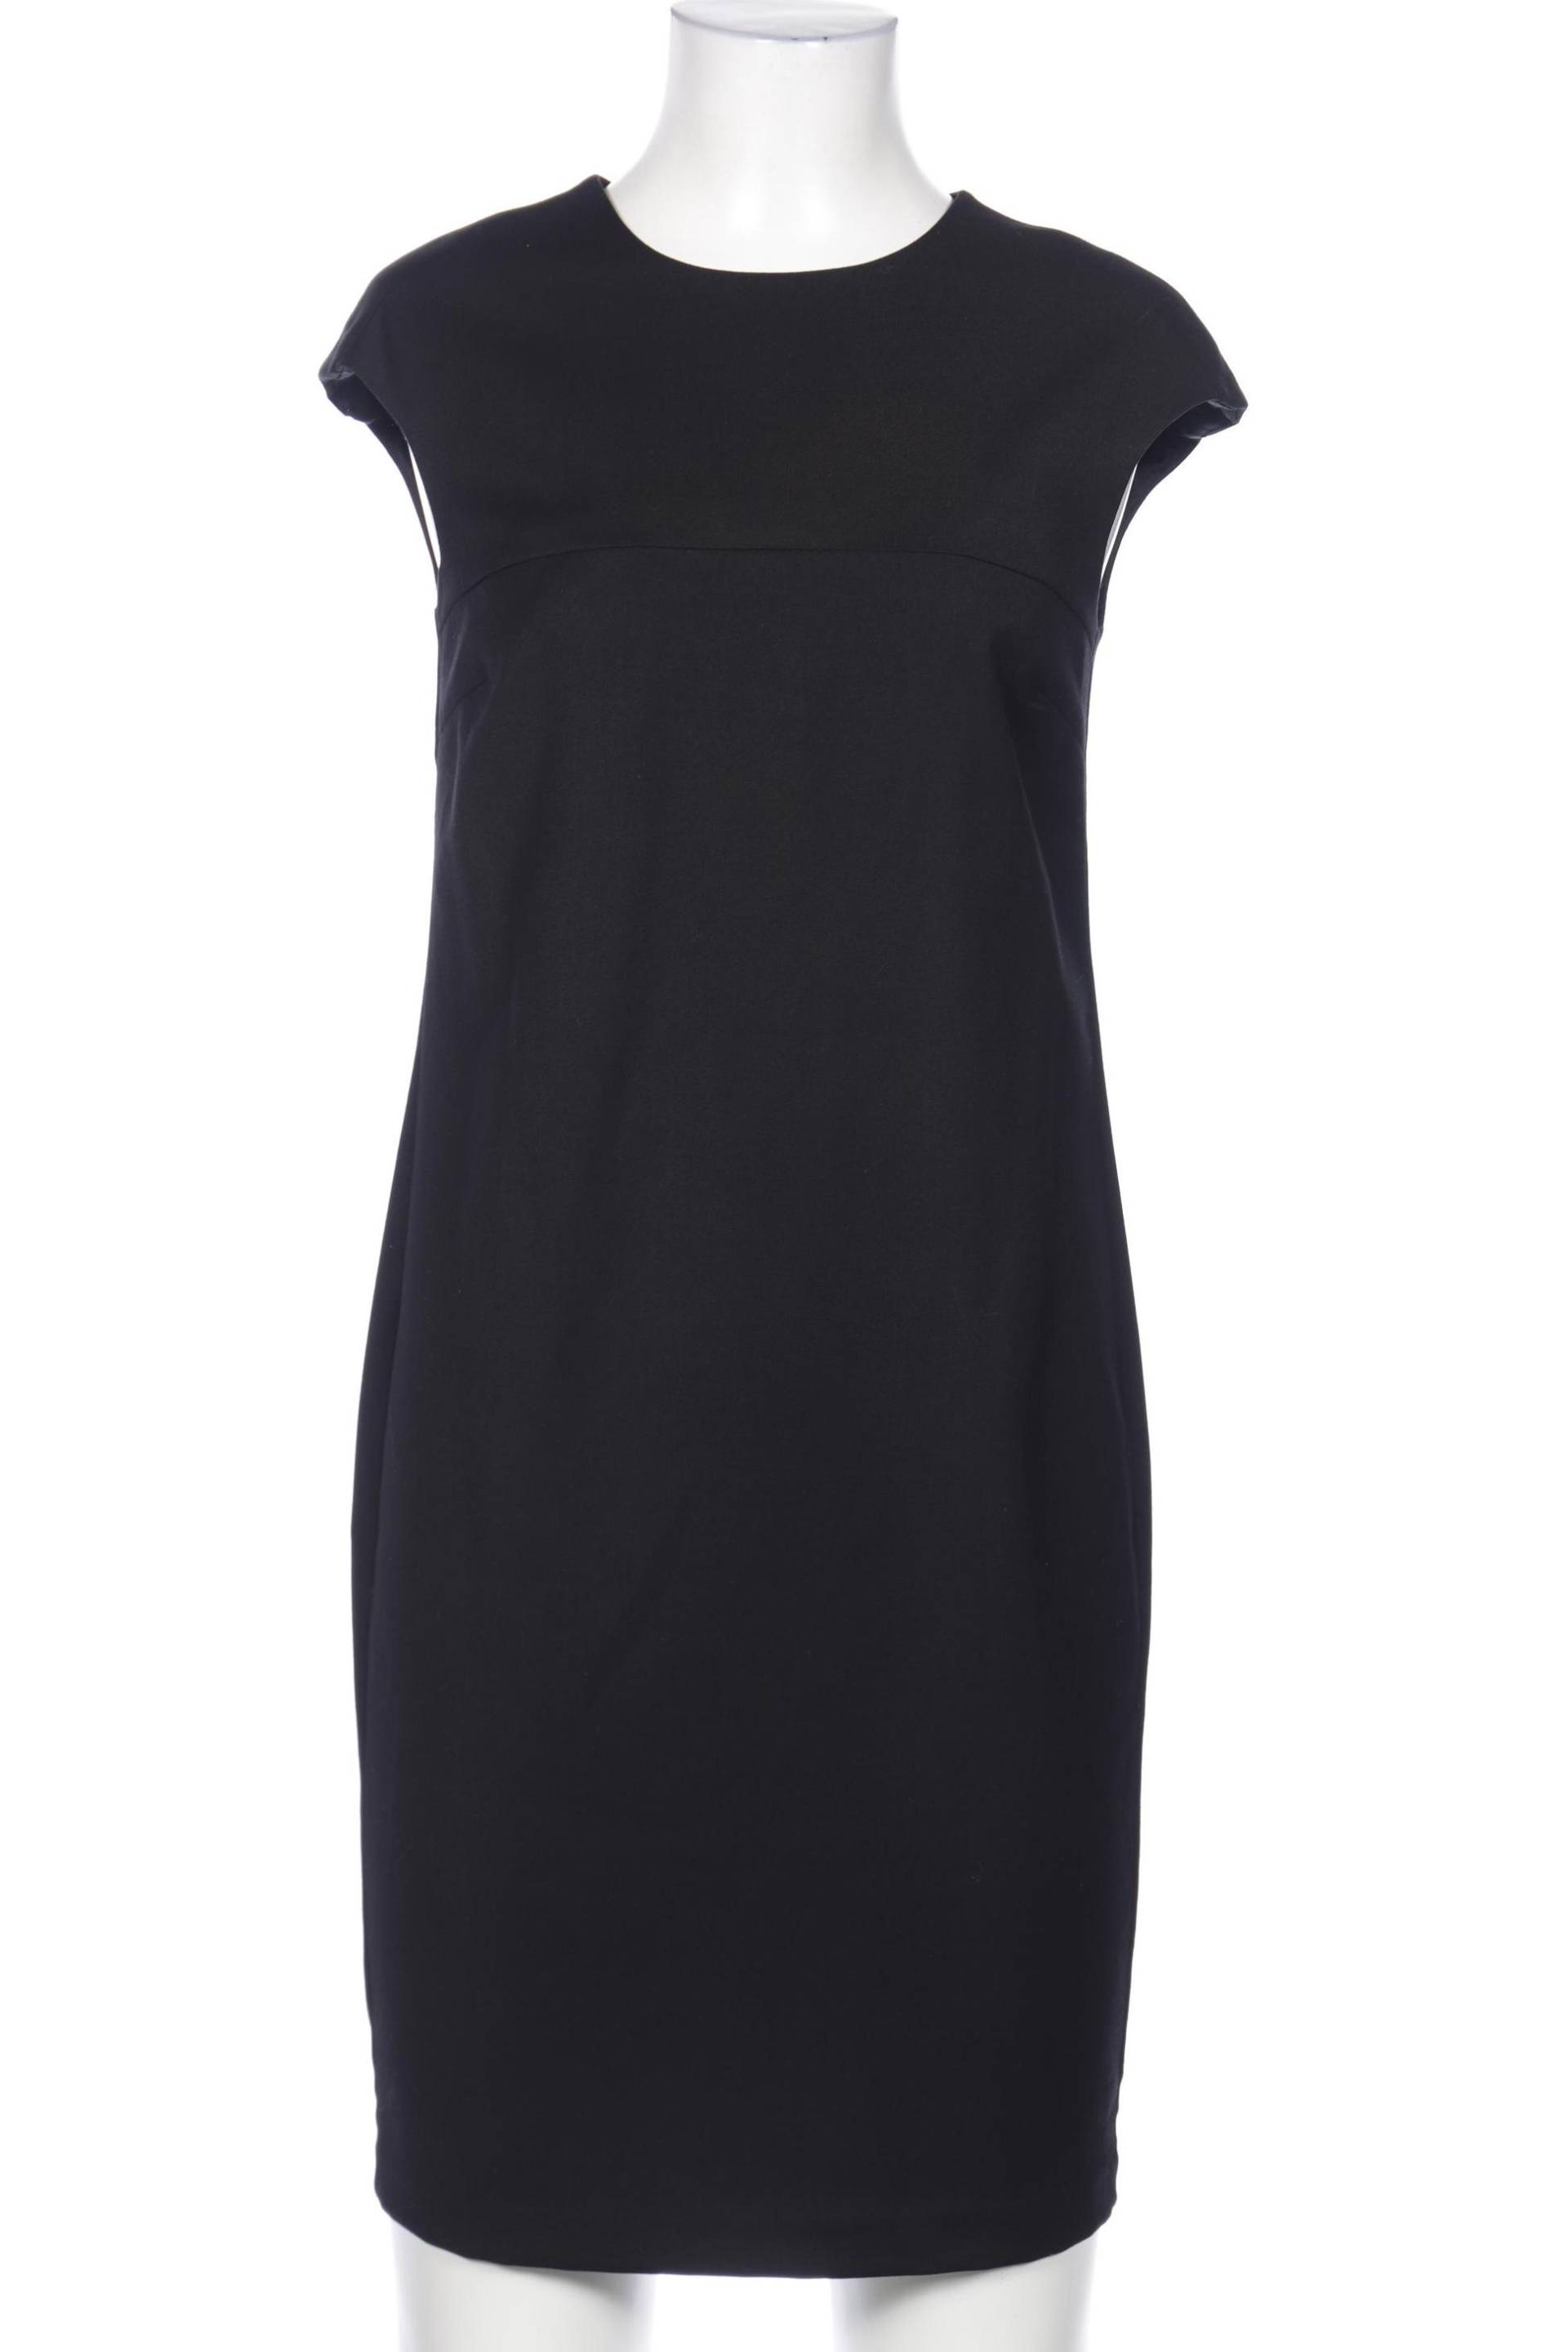 UNITED COLORS OF BENETTON Damen Kleid, schwarz von United Colors of Benetton